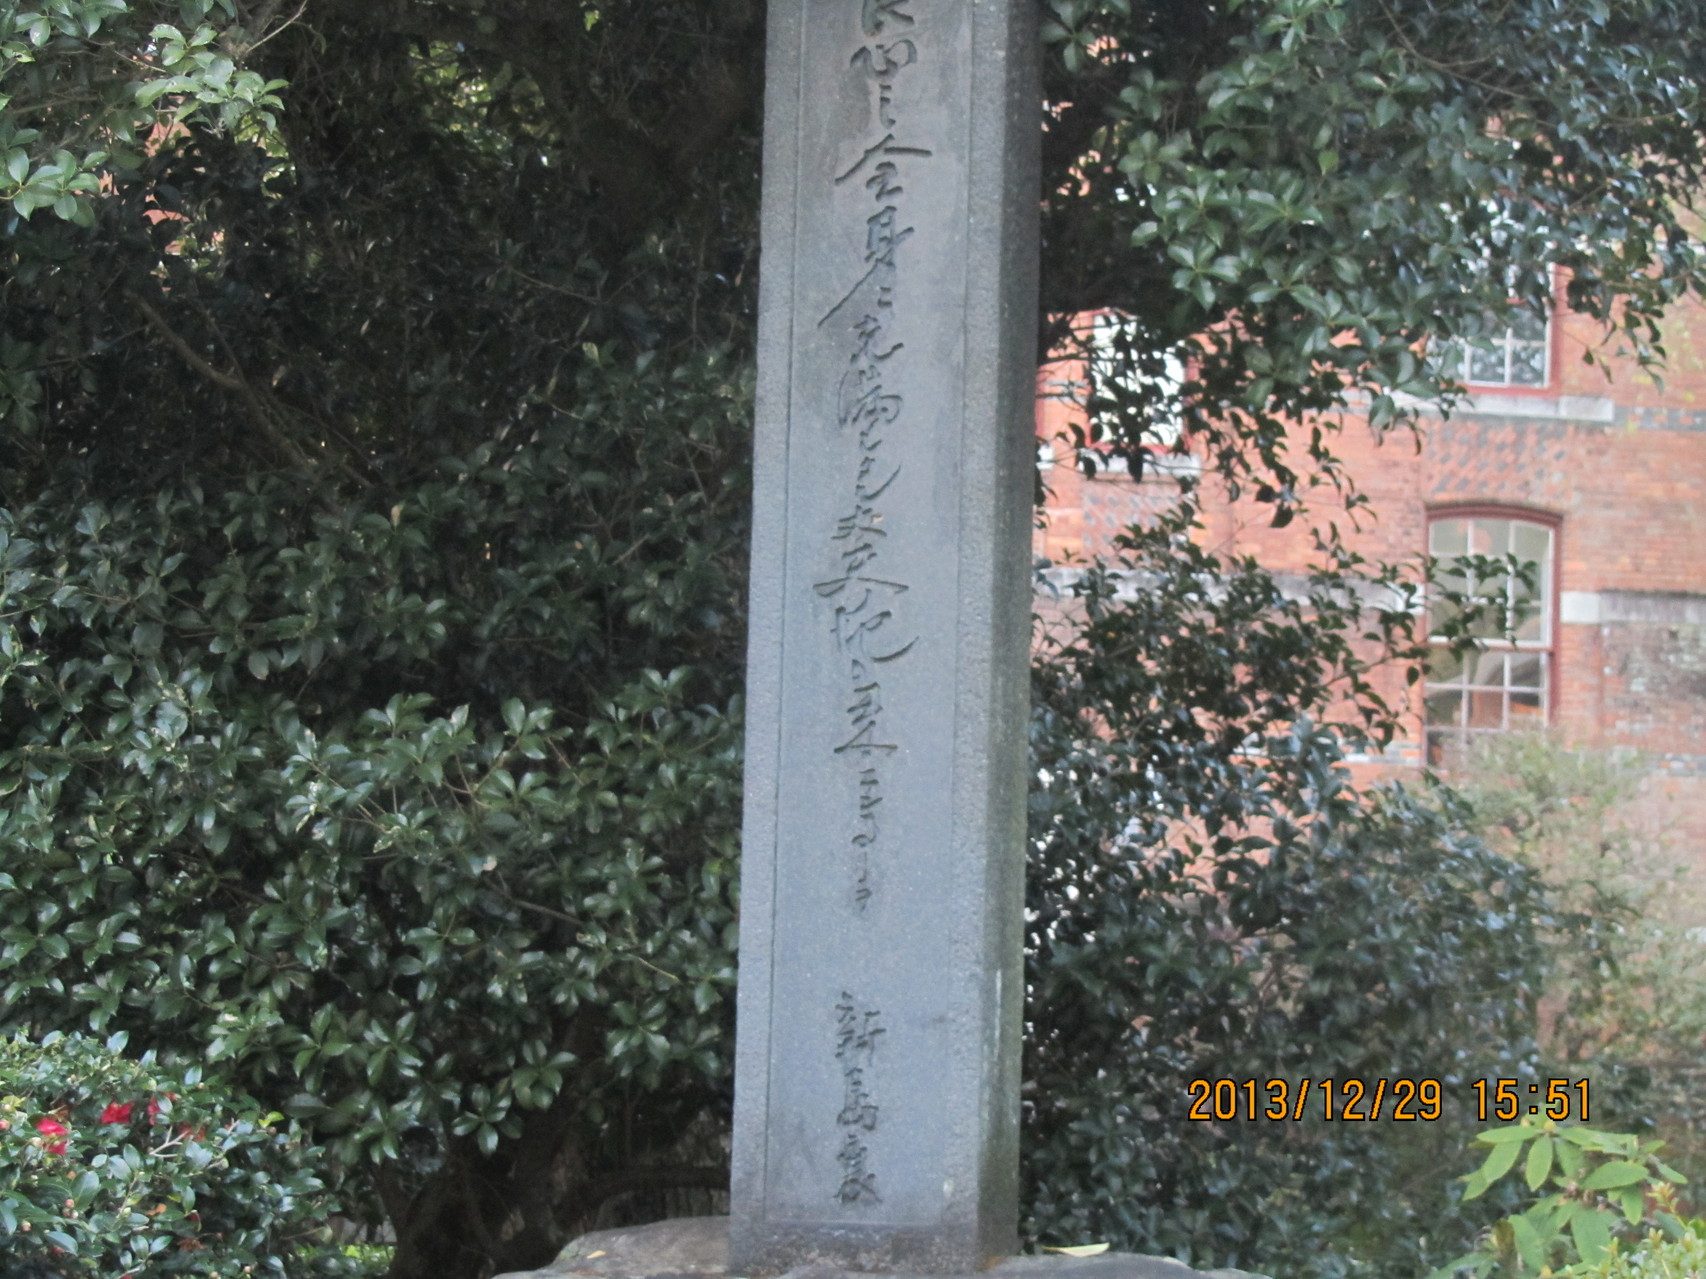 同志社大学構内にある新島　襄（にいじま じょう、新島八重の夫、同志社の創立者）の碑。